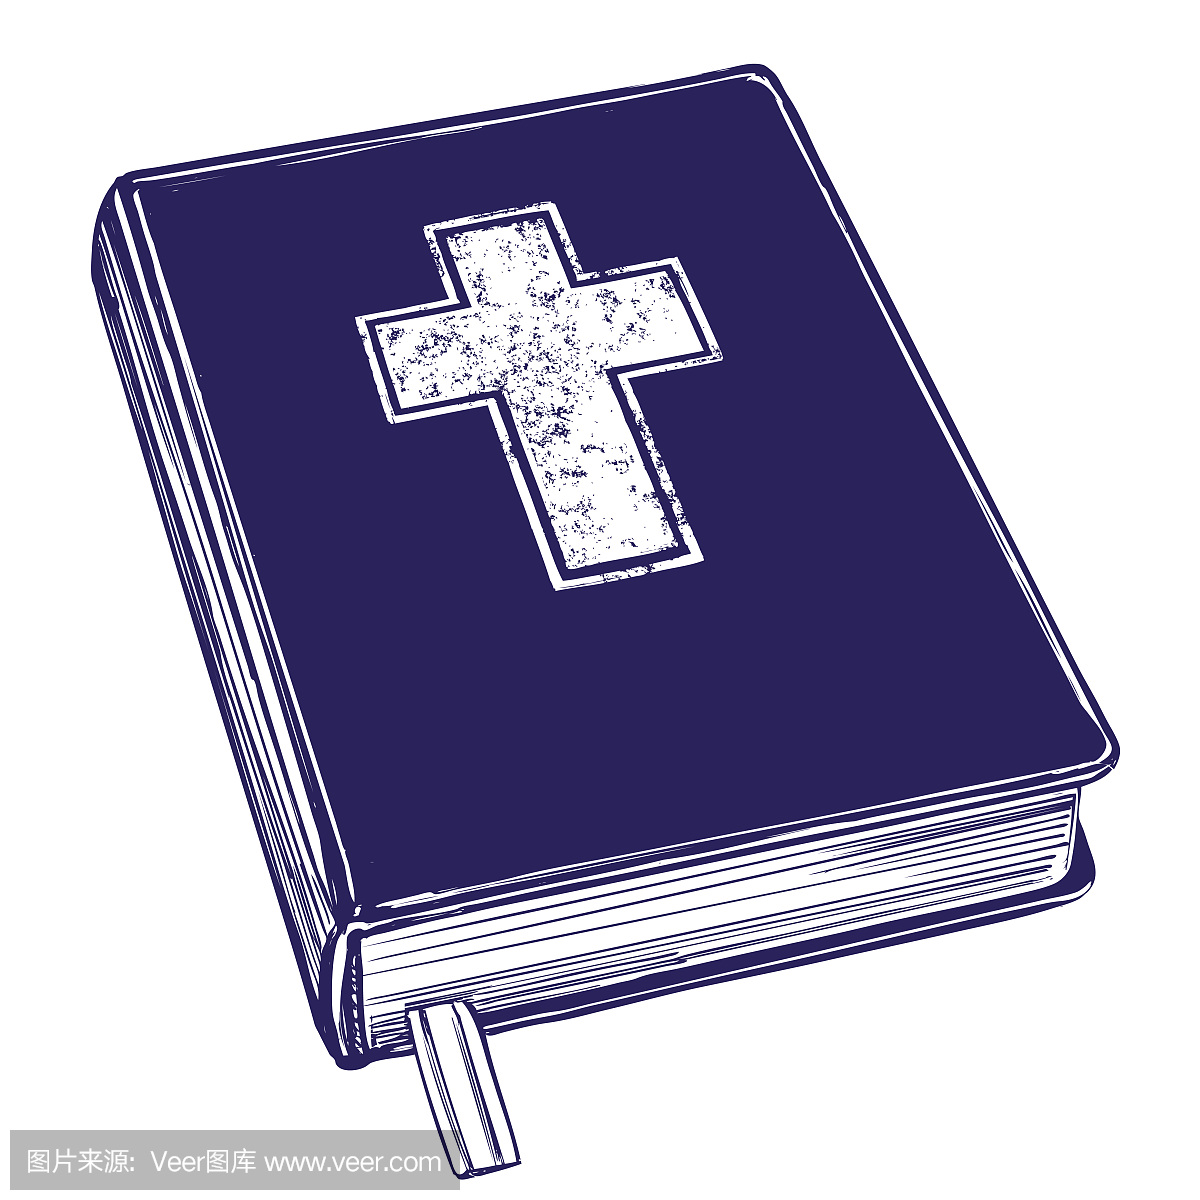 圣经,福音,基督教教义,基督教的象征手绘矢量插